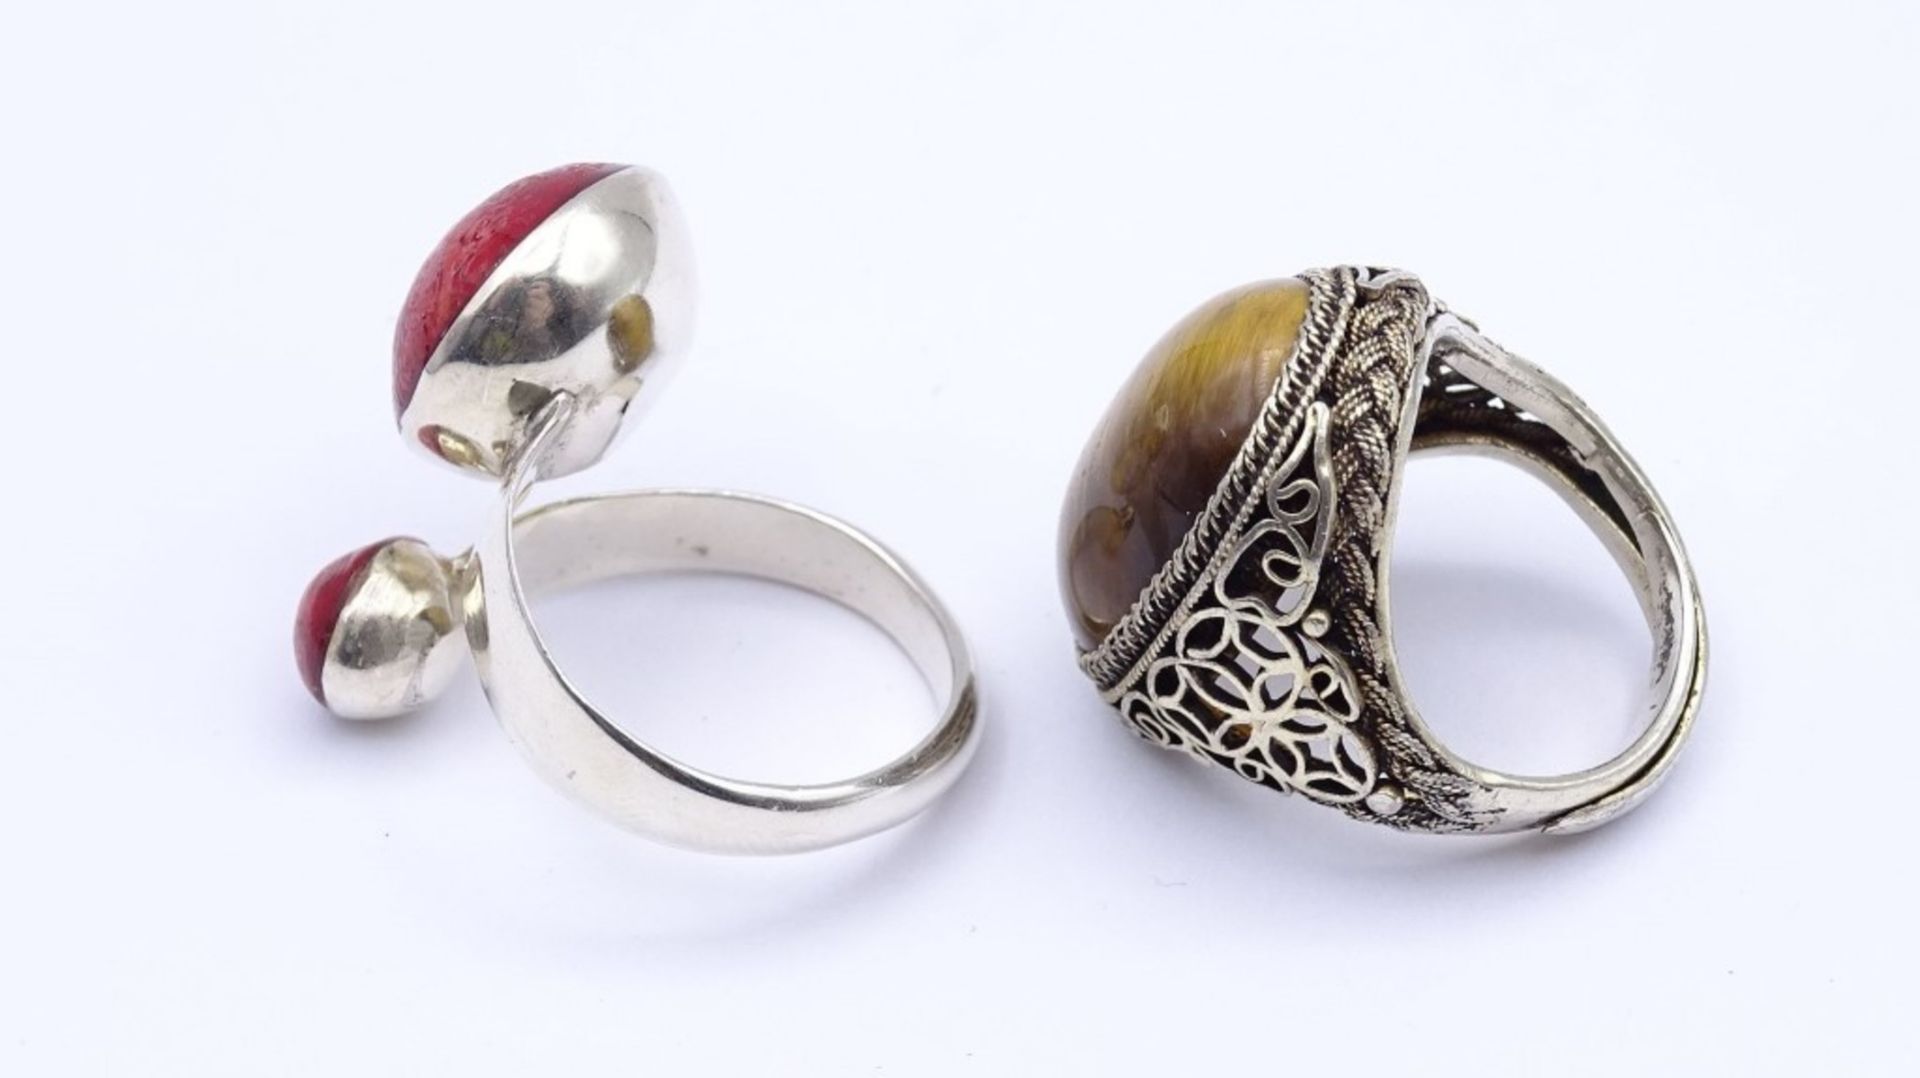 Zwei Silber Ringe mit Schaumkoralle und Tigerauge, zus.14 g., RG 59 / 52 - Image 3 of 3